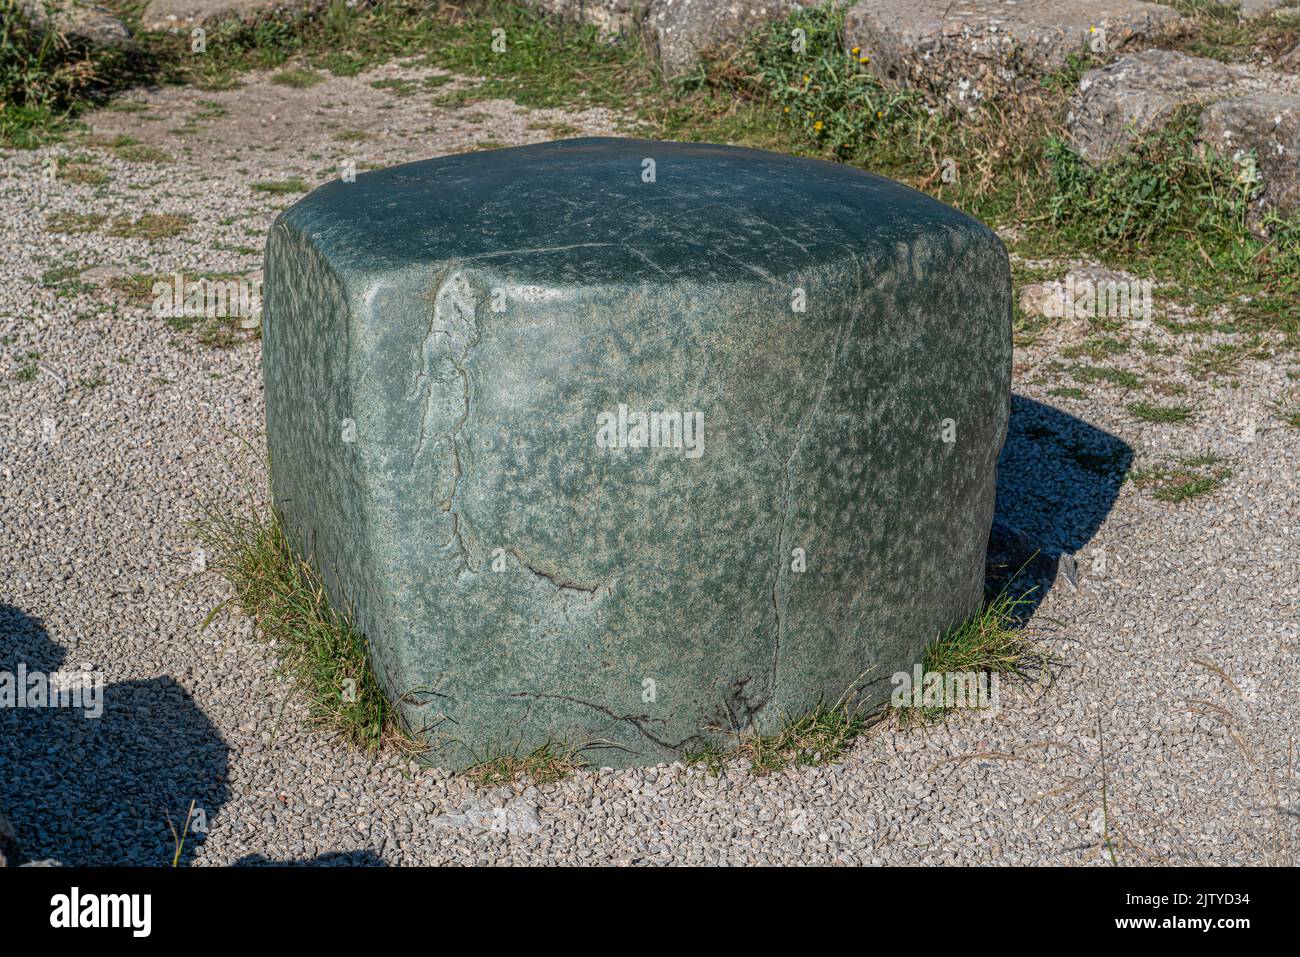 La pietra verde di Hattusa era la capitale dell'Impero ittita nella tarda età del bronzo. Le sue rovine si trovano vicino alla moderna Bogazkale. Corum, Turchia. Foto Stock